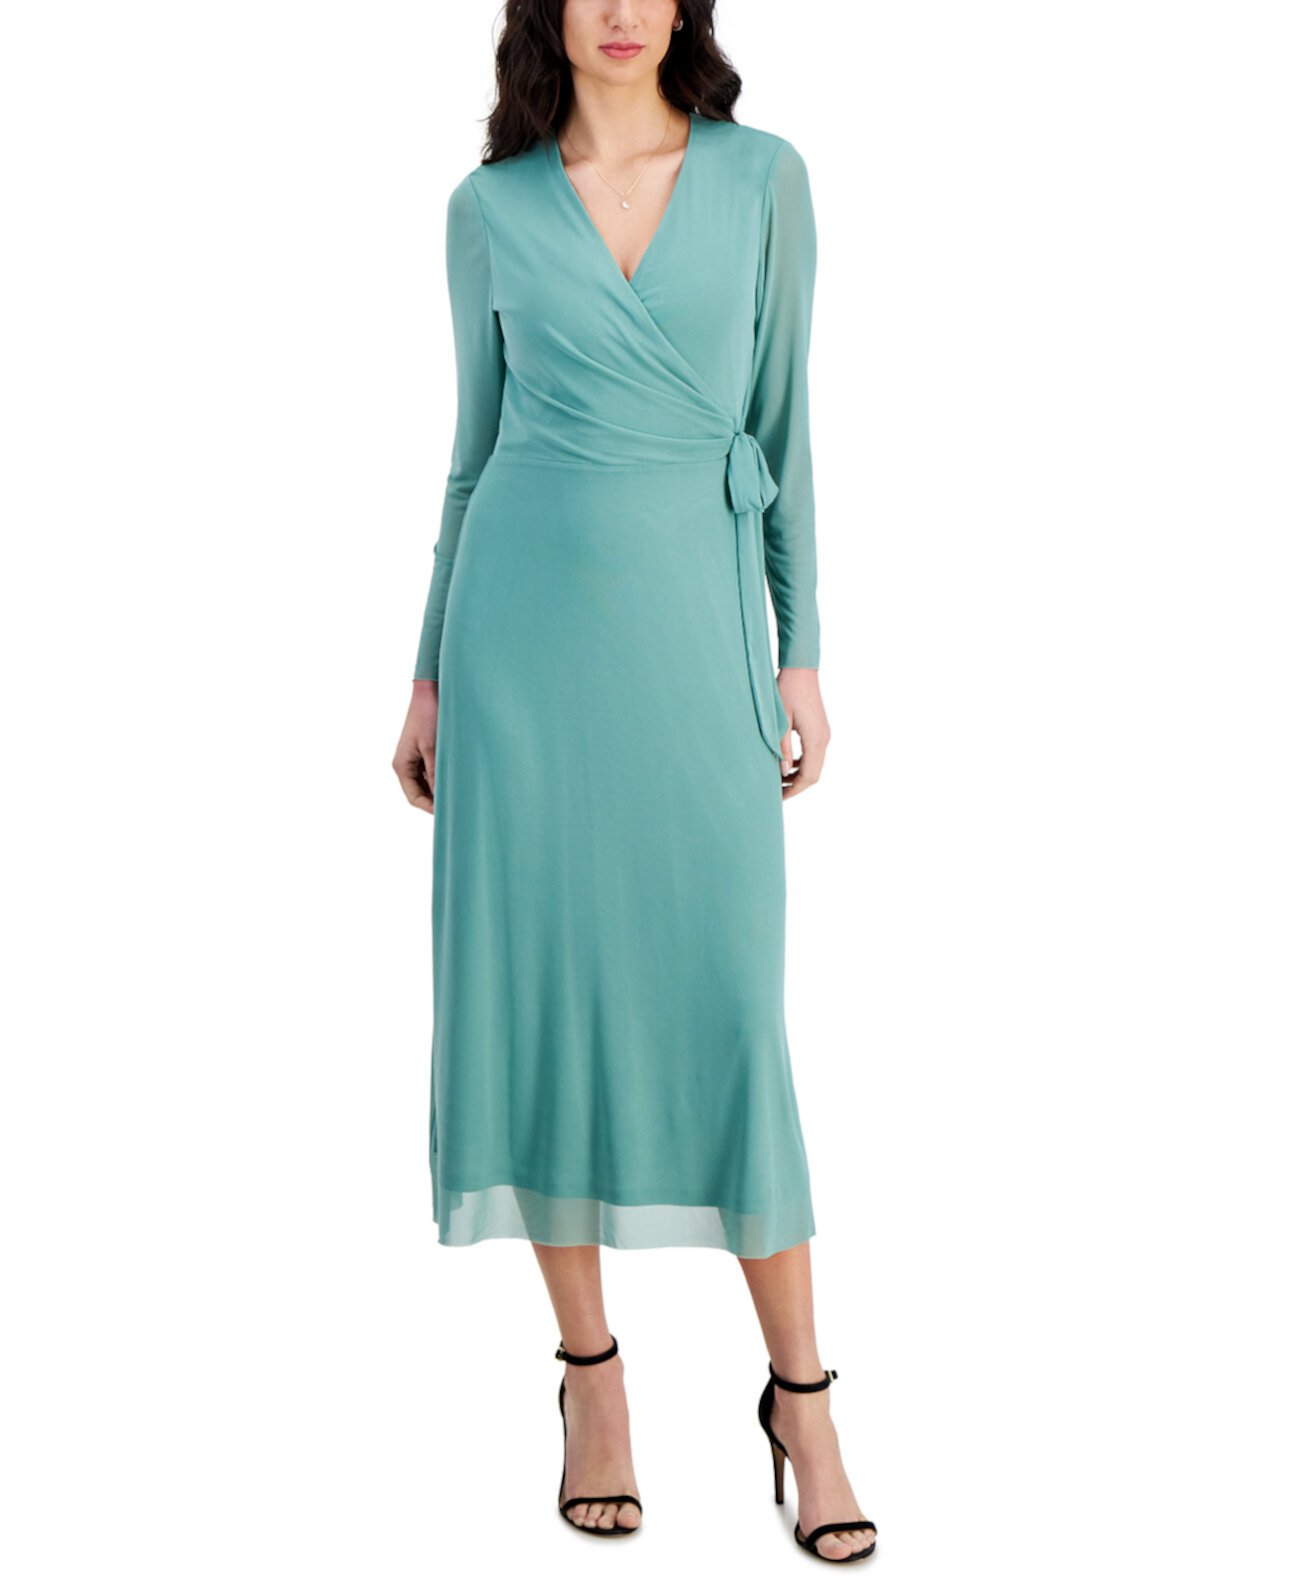 Women's Faux-Wrap Mesh-Sleeve Midi Dress Anne Klein